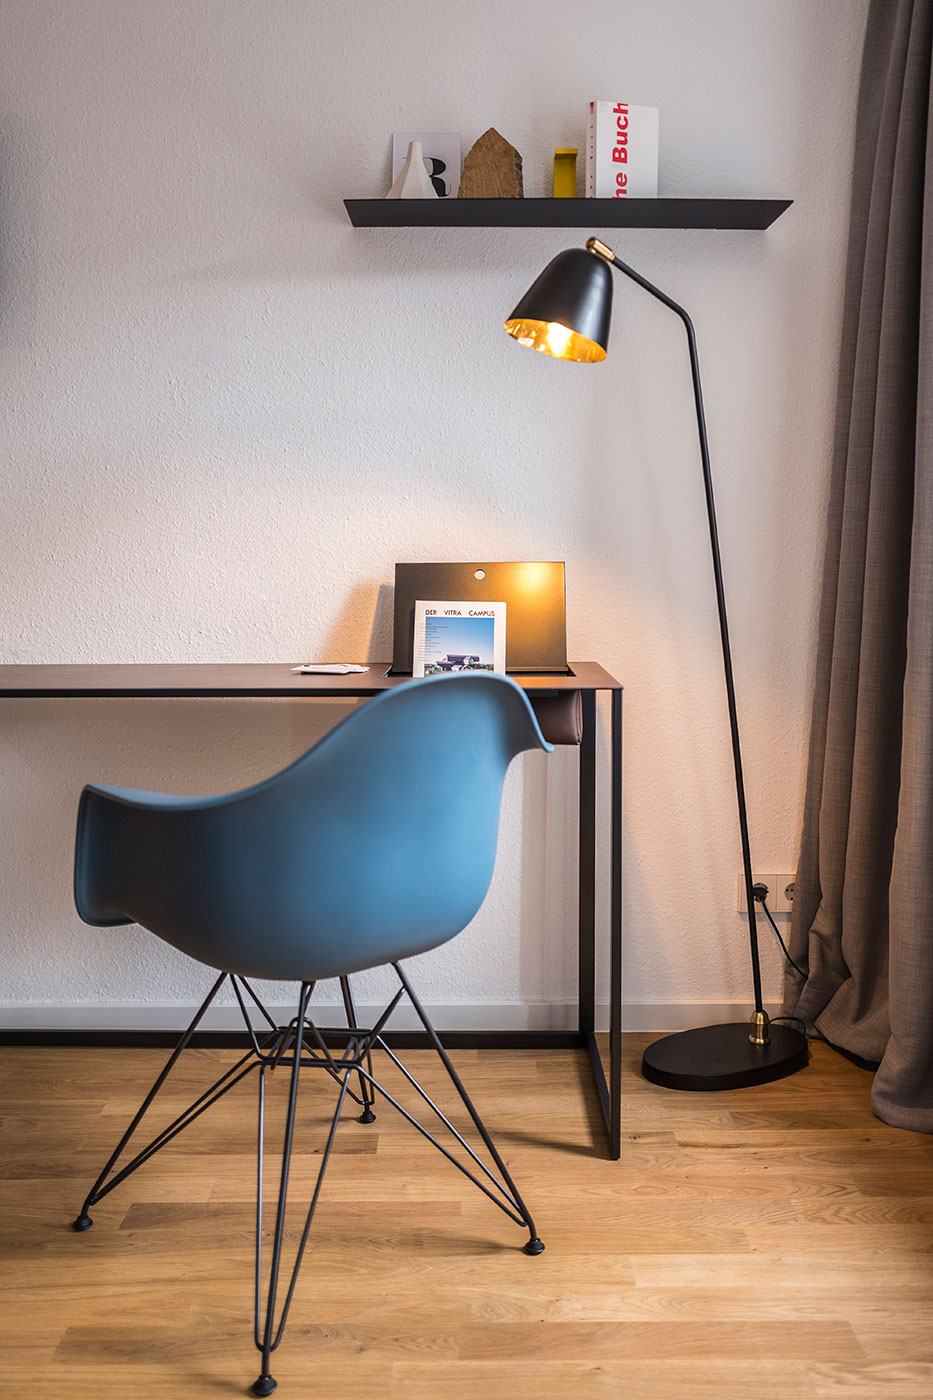 Stilobjekt shapes furniture rooms by Room | Concept Designer